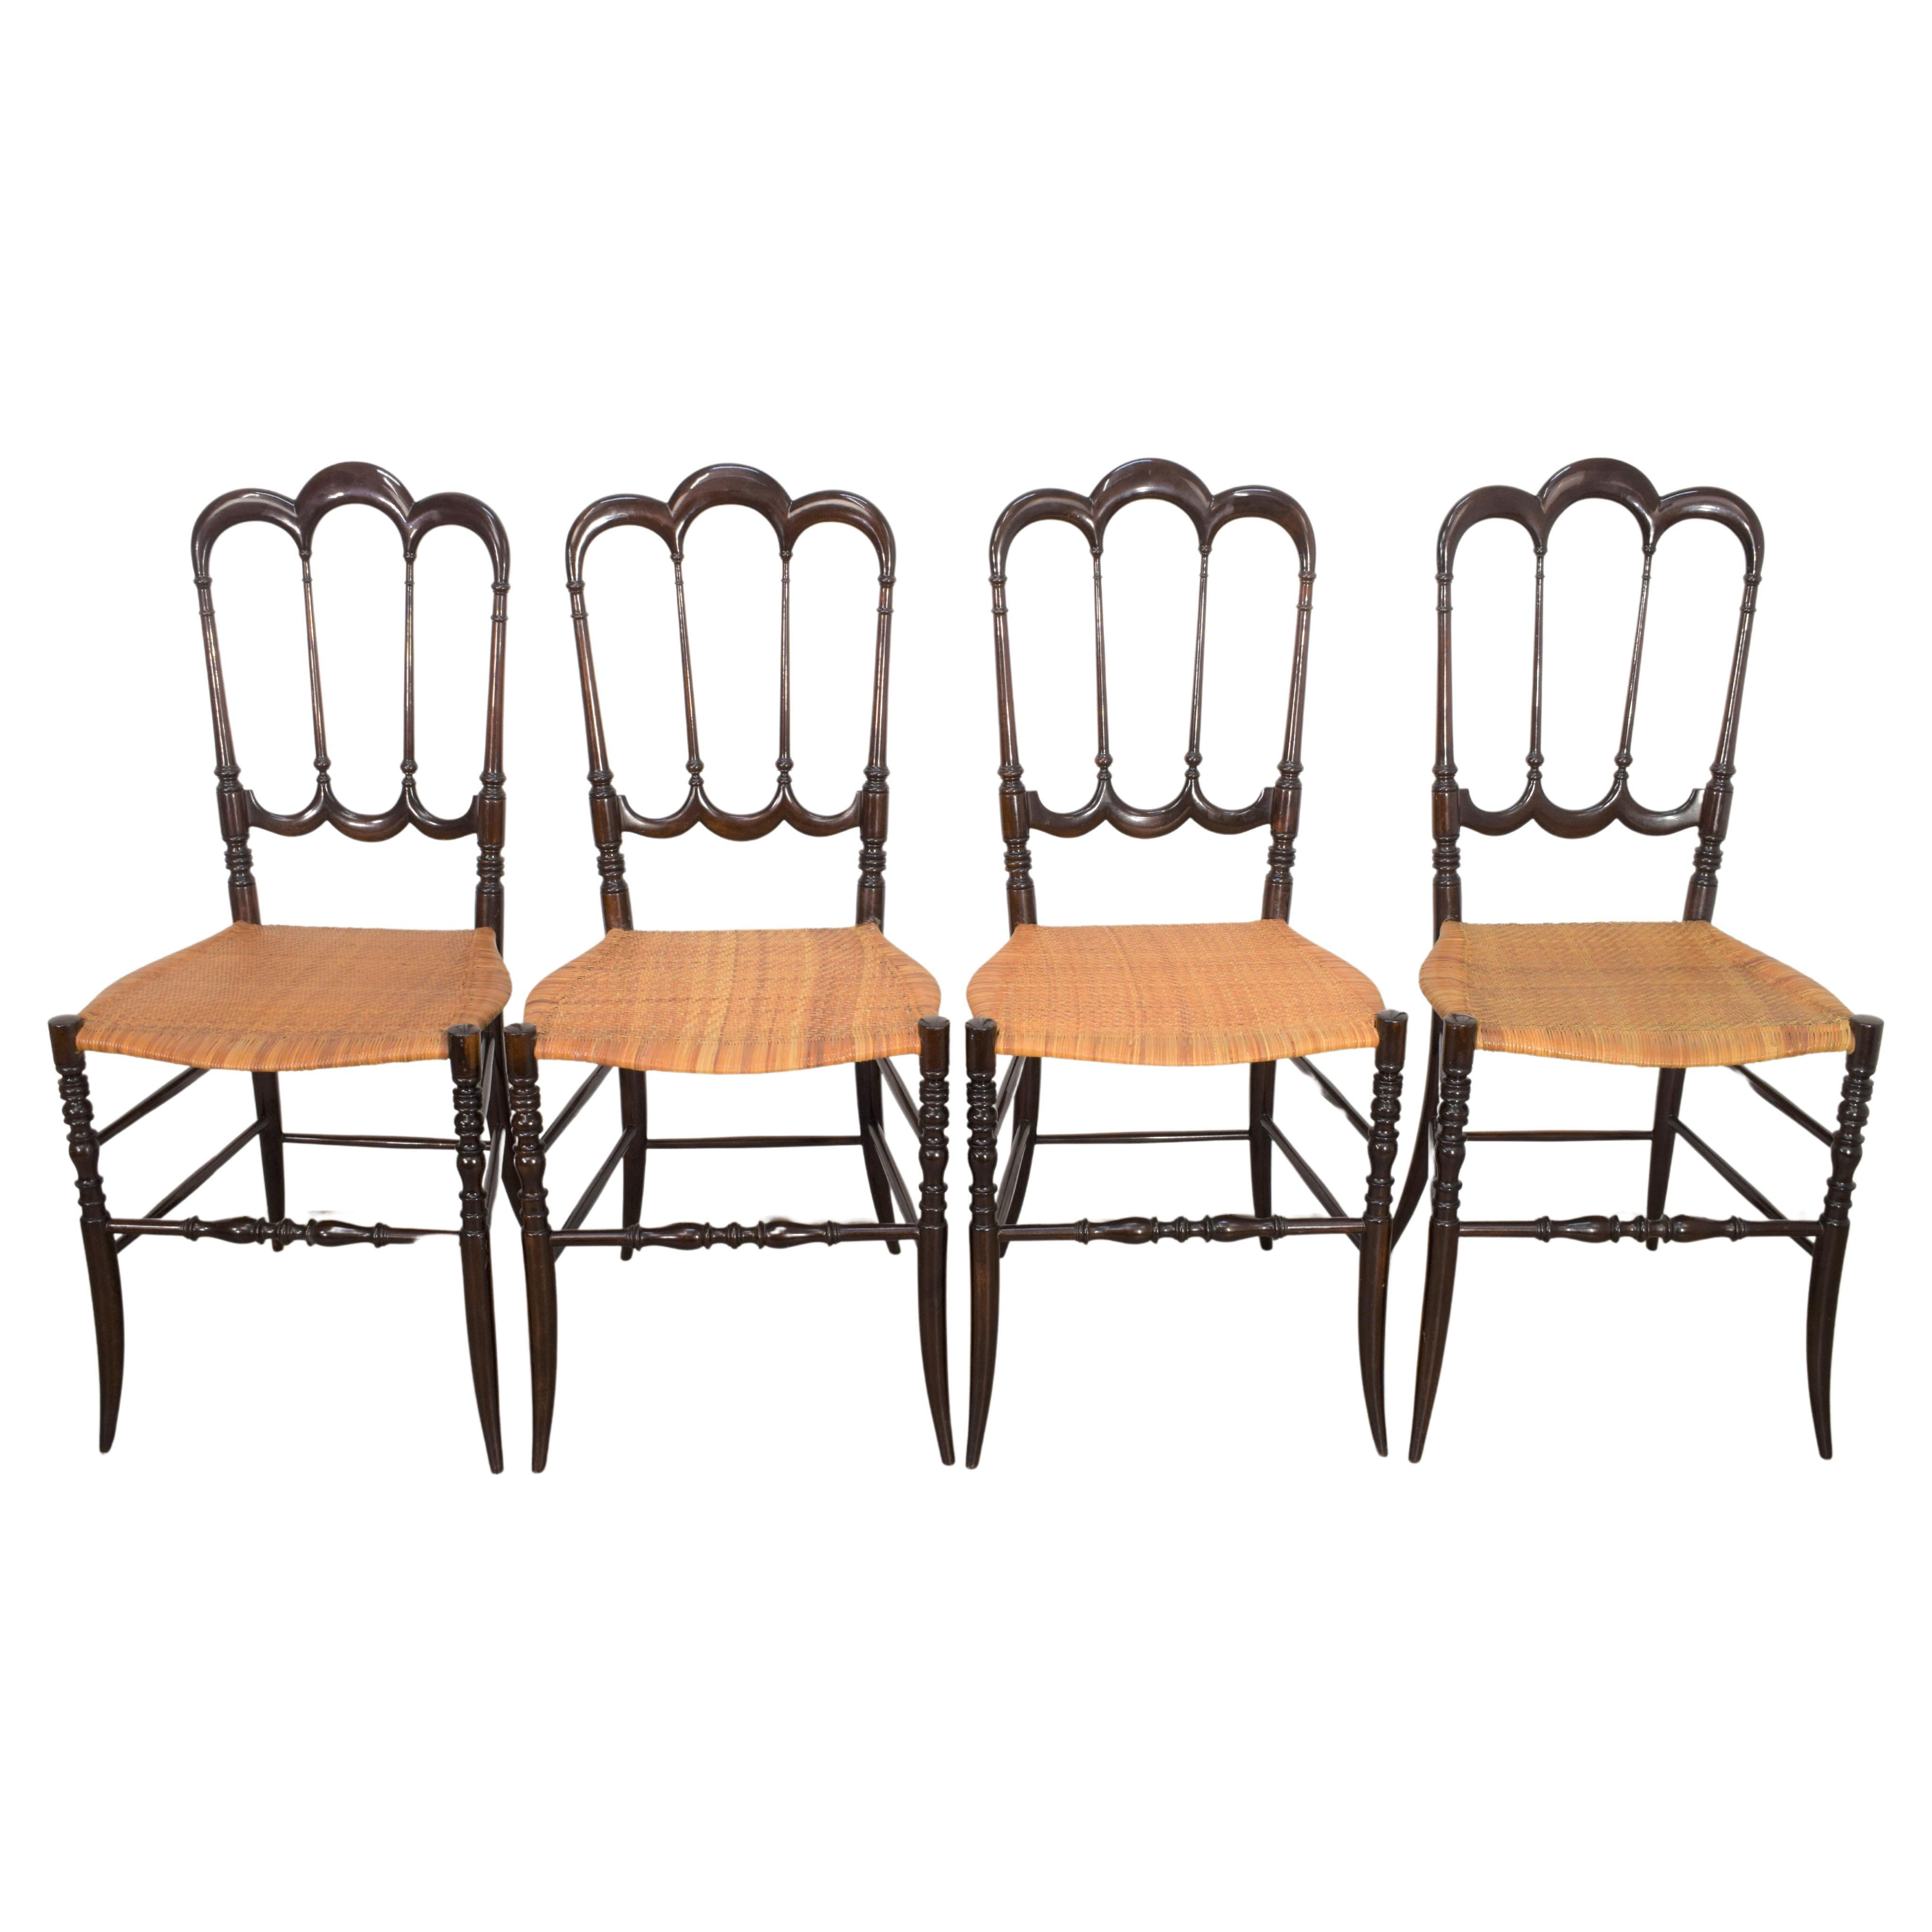 Satz von 4 Stühlen Modell 'tre archi' von Levaggi, Italien, 1950er Jahre